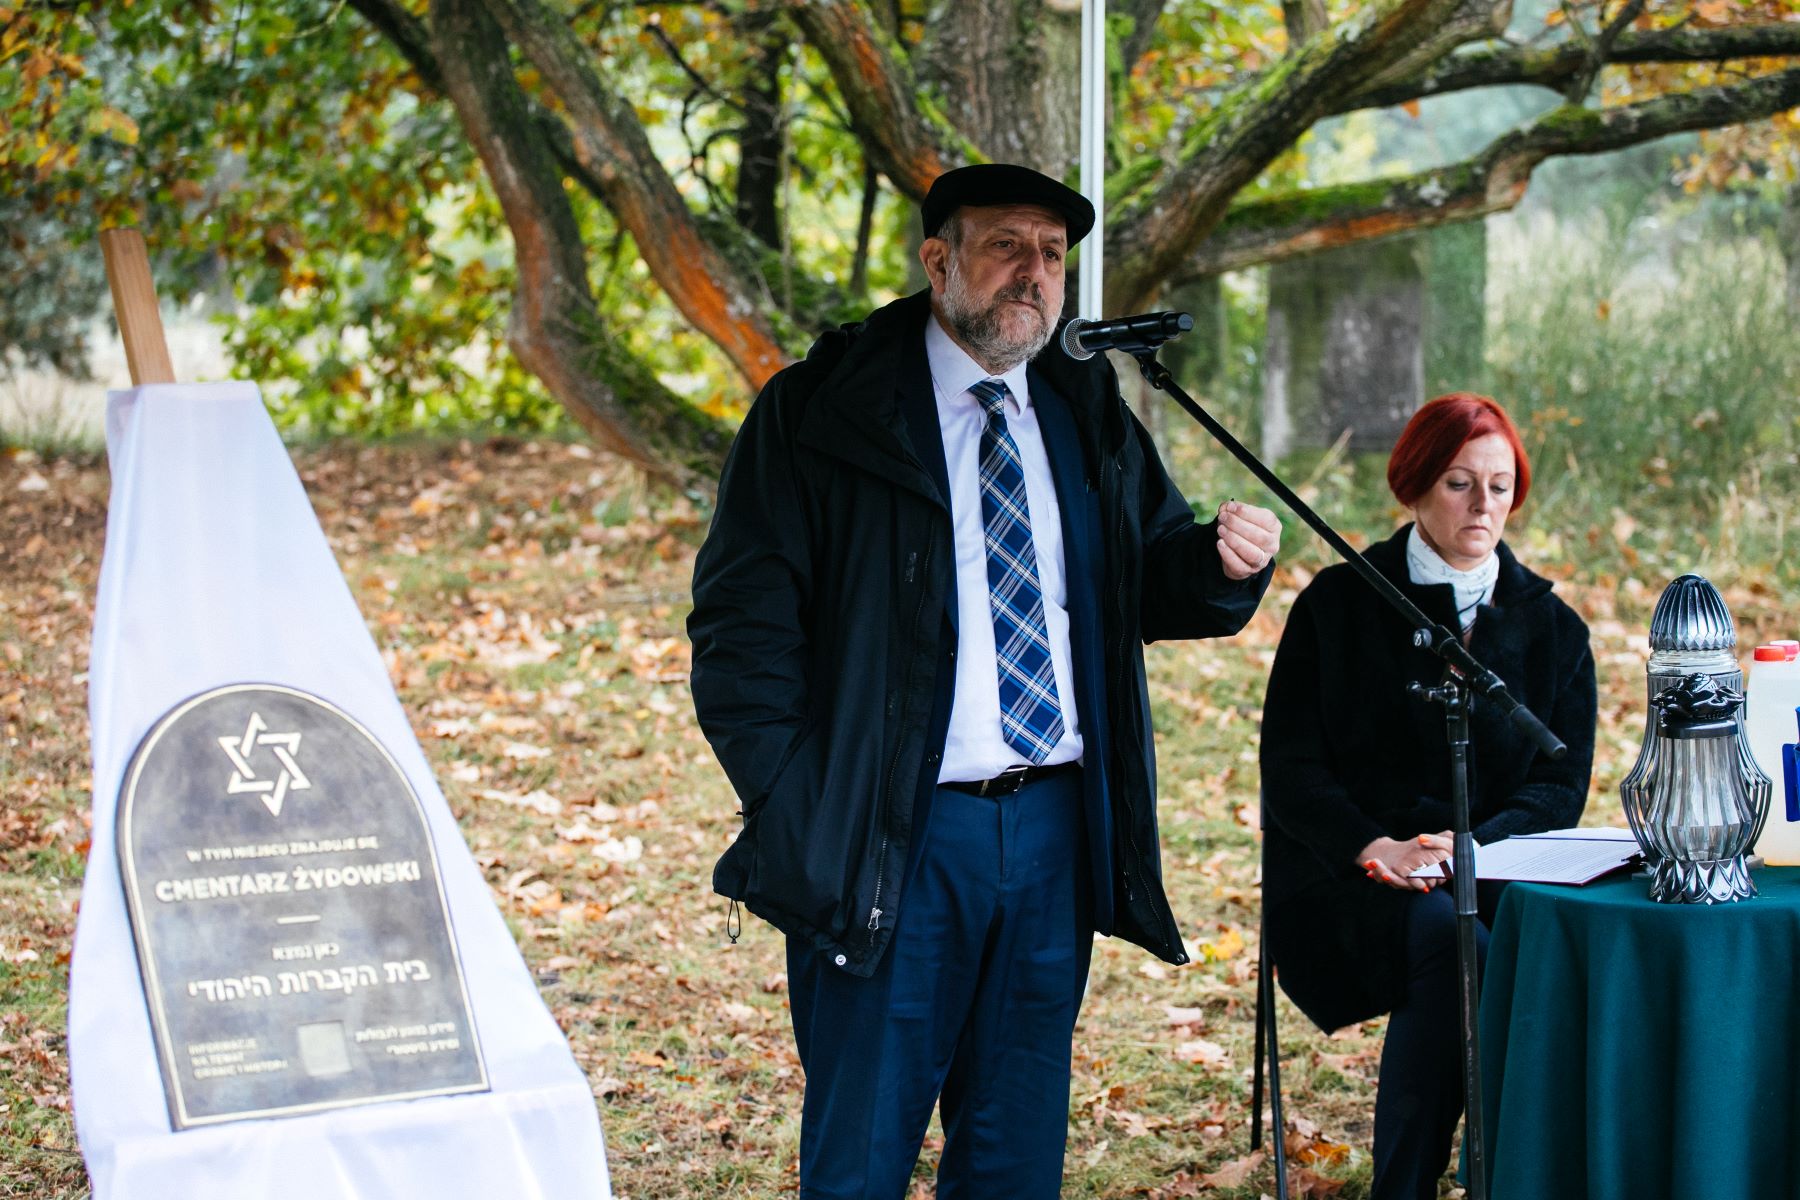 Naczelny Rabin Polski Michael Schudrich mówi przez mikrofon. Stoi obok tablicy upamiętniającej cmentarz żydowski w Górze Kalwarii. Obok przy stoliku siedzi kobieta.